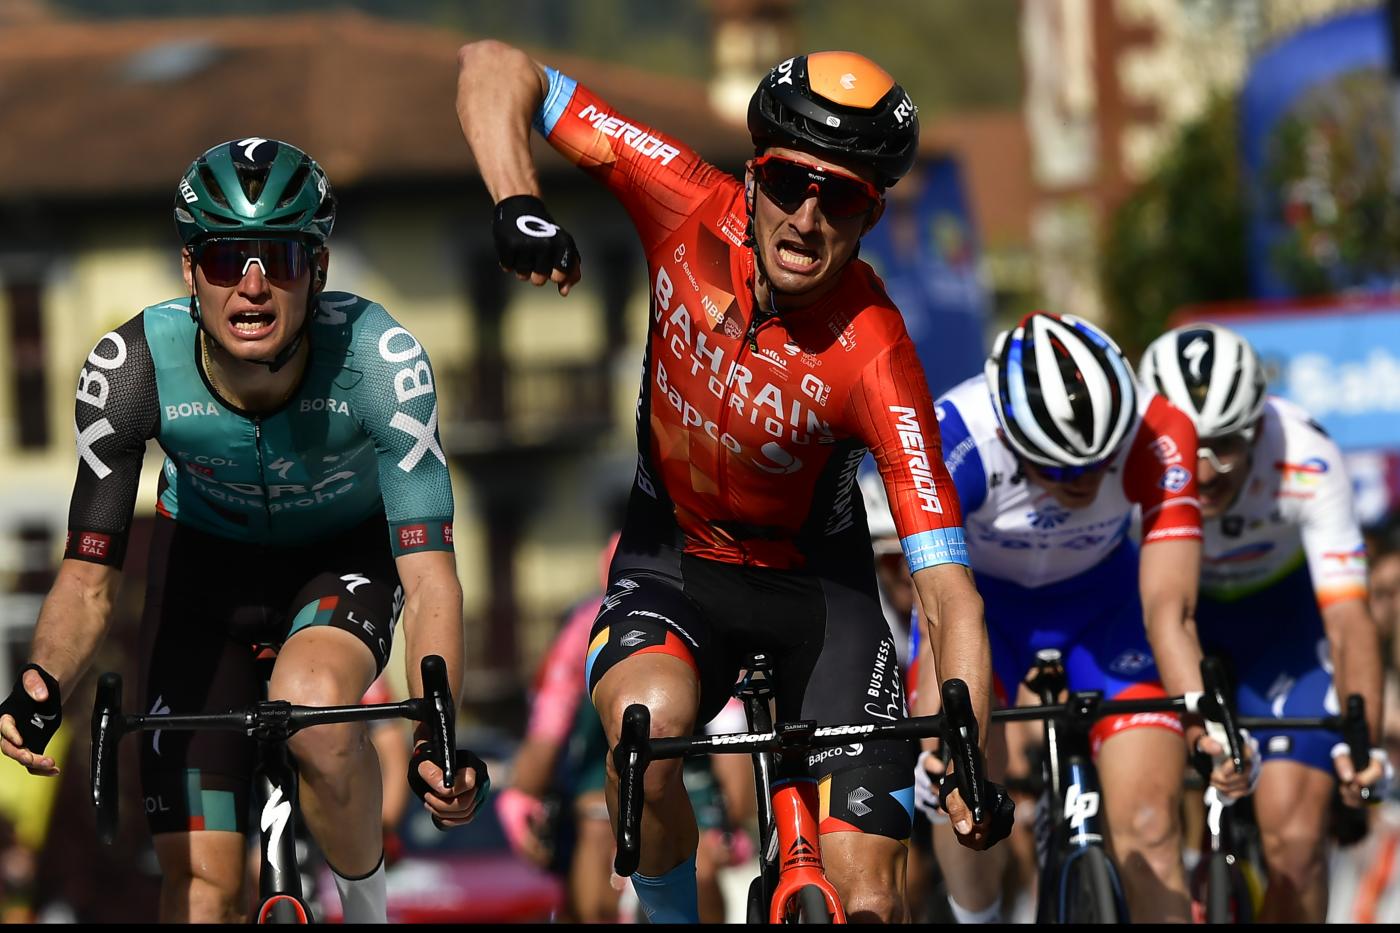 Ciclismo, Pello Bilbao: “Non penso alla classifica generale al Tour de France”